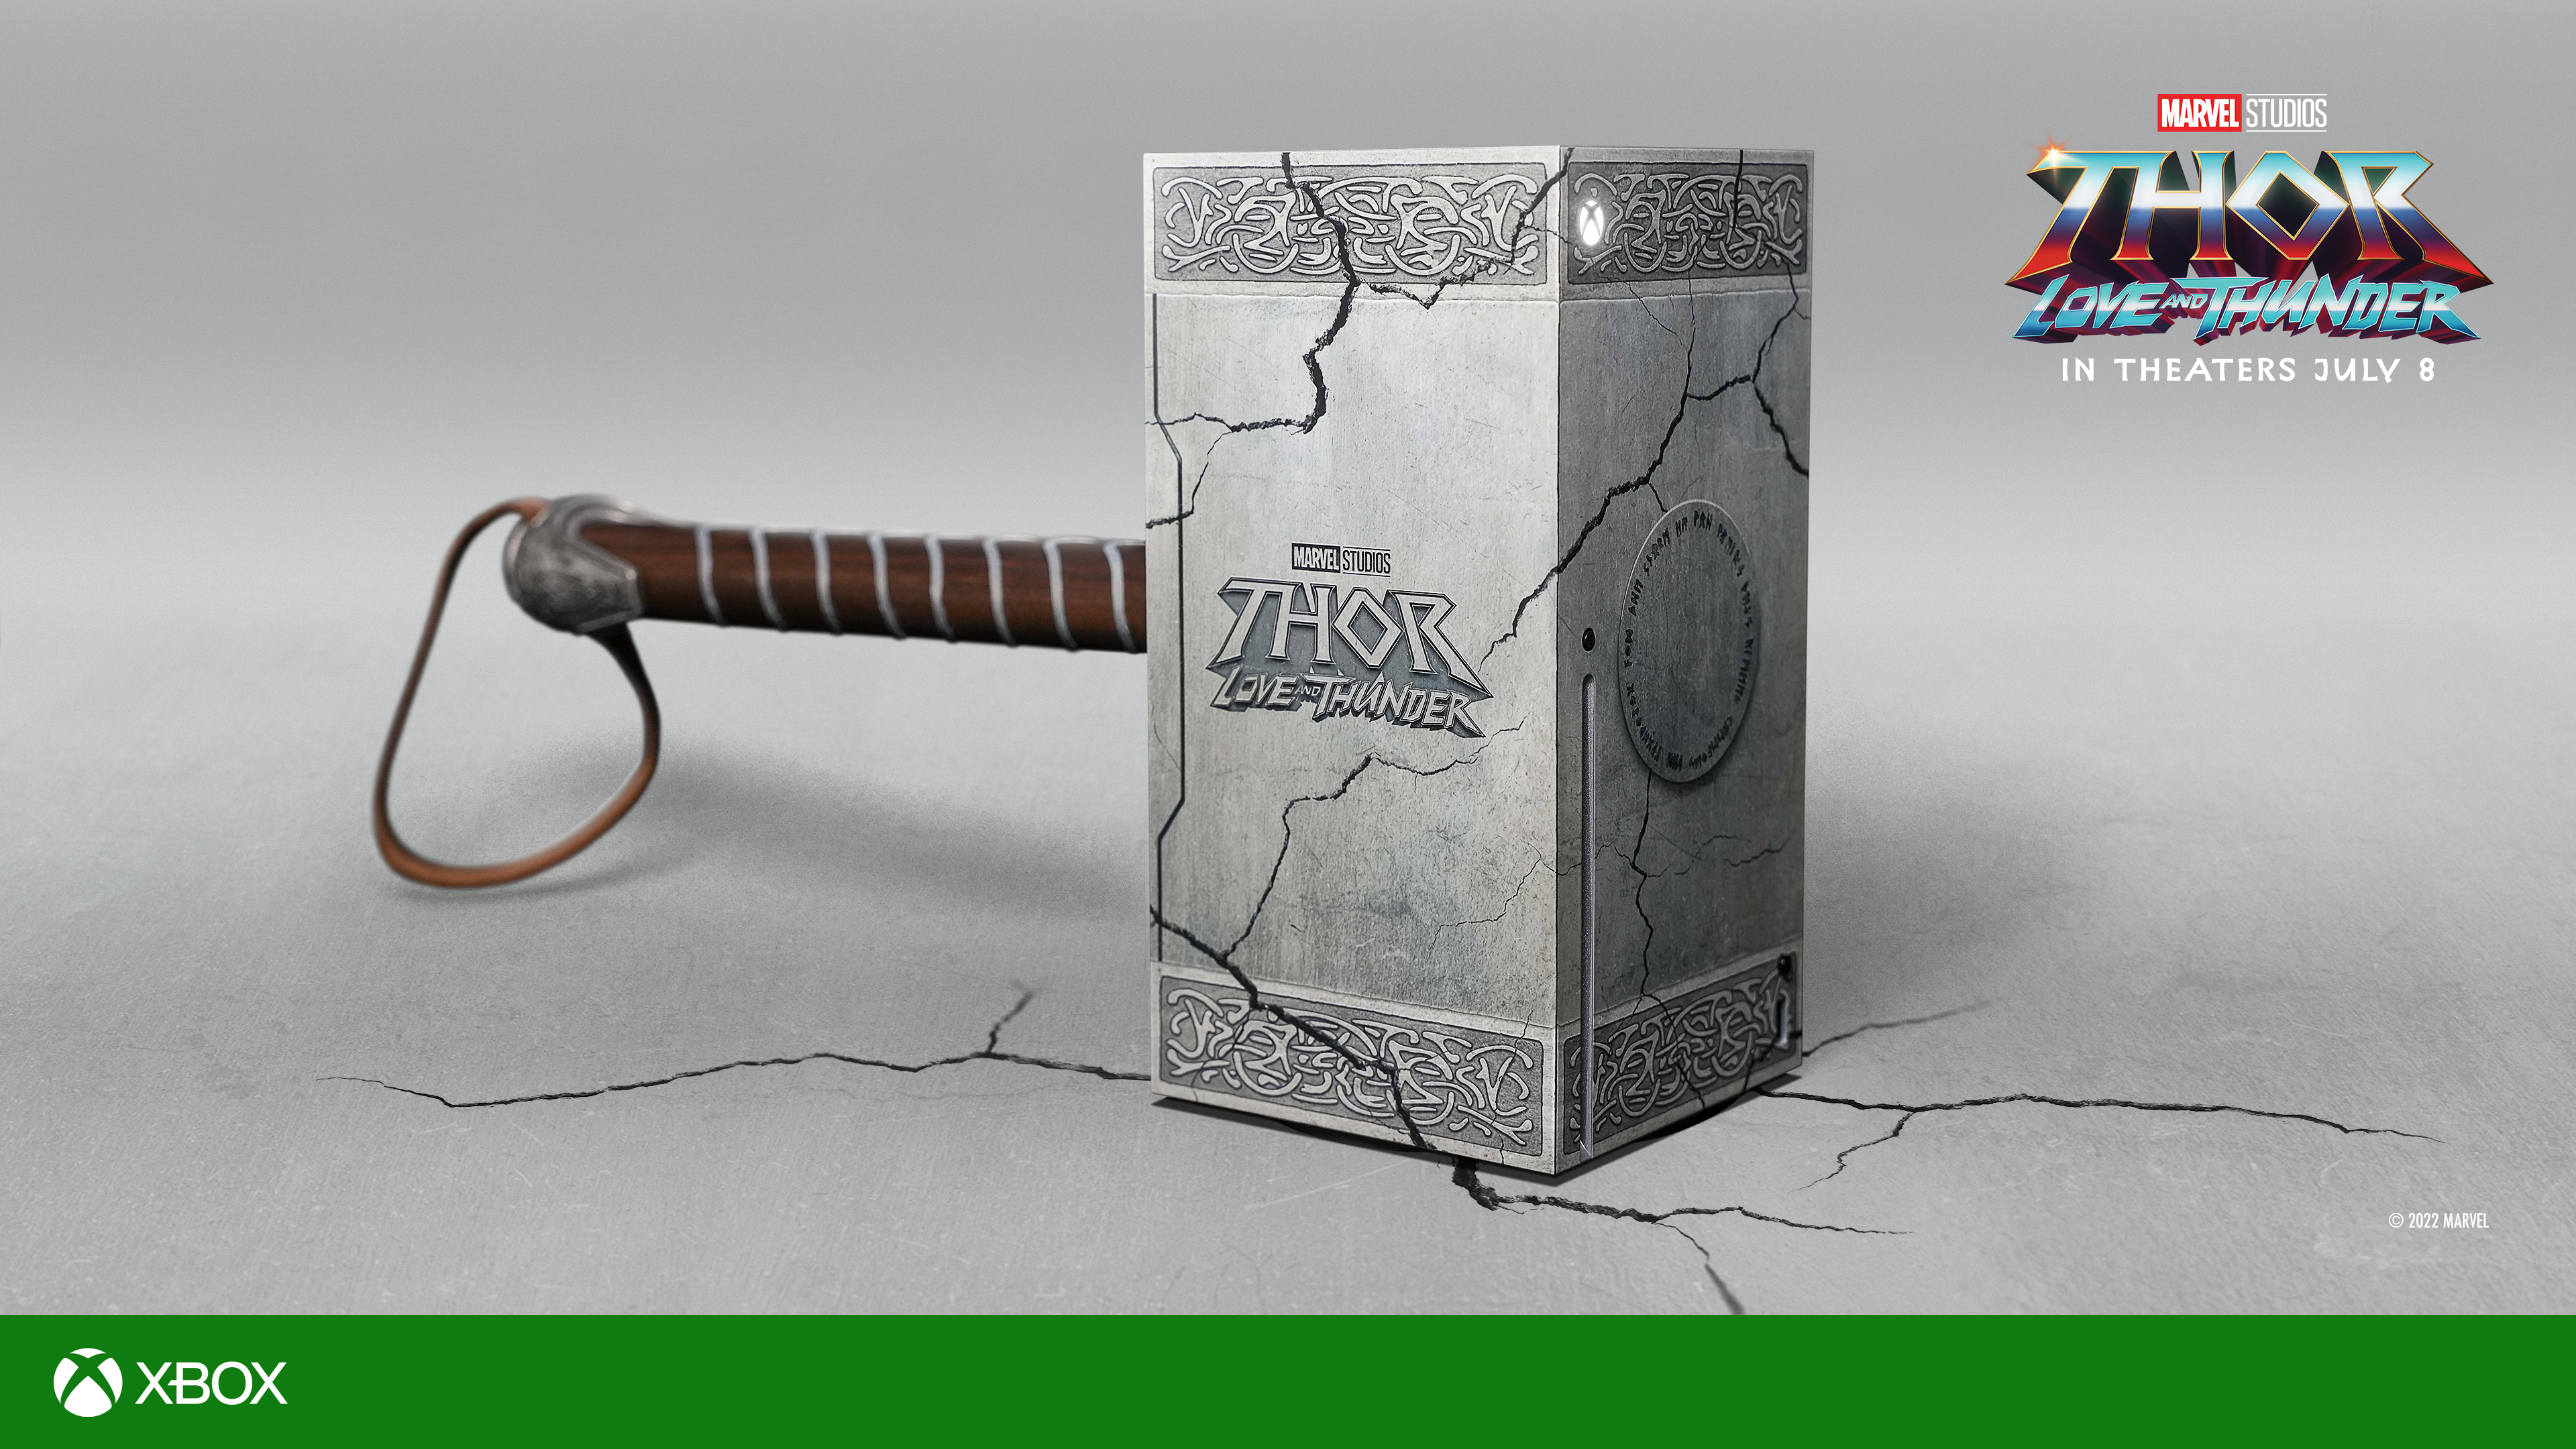 Voici la chose: Microsoft a présenté une Xbox Series X en édition limitée dans le style du marteau de Thor